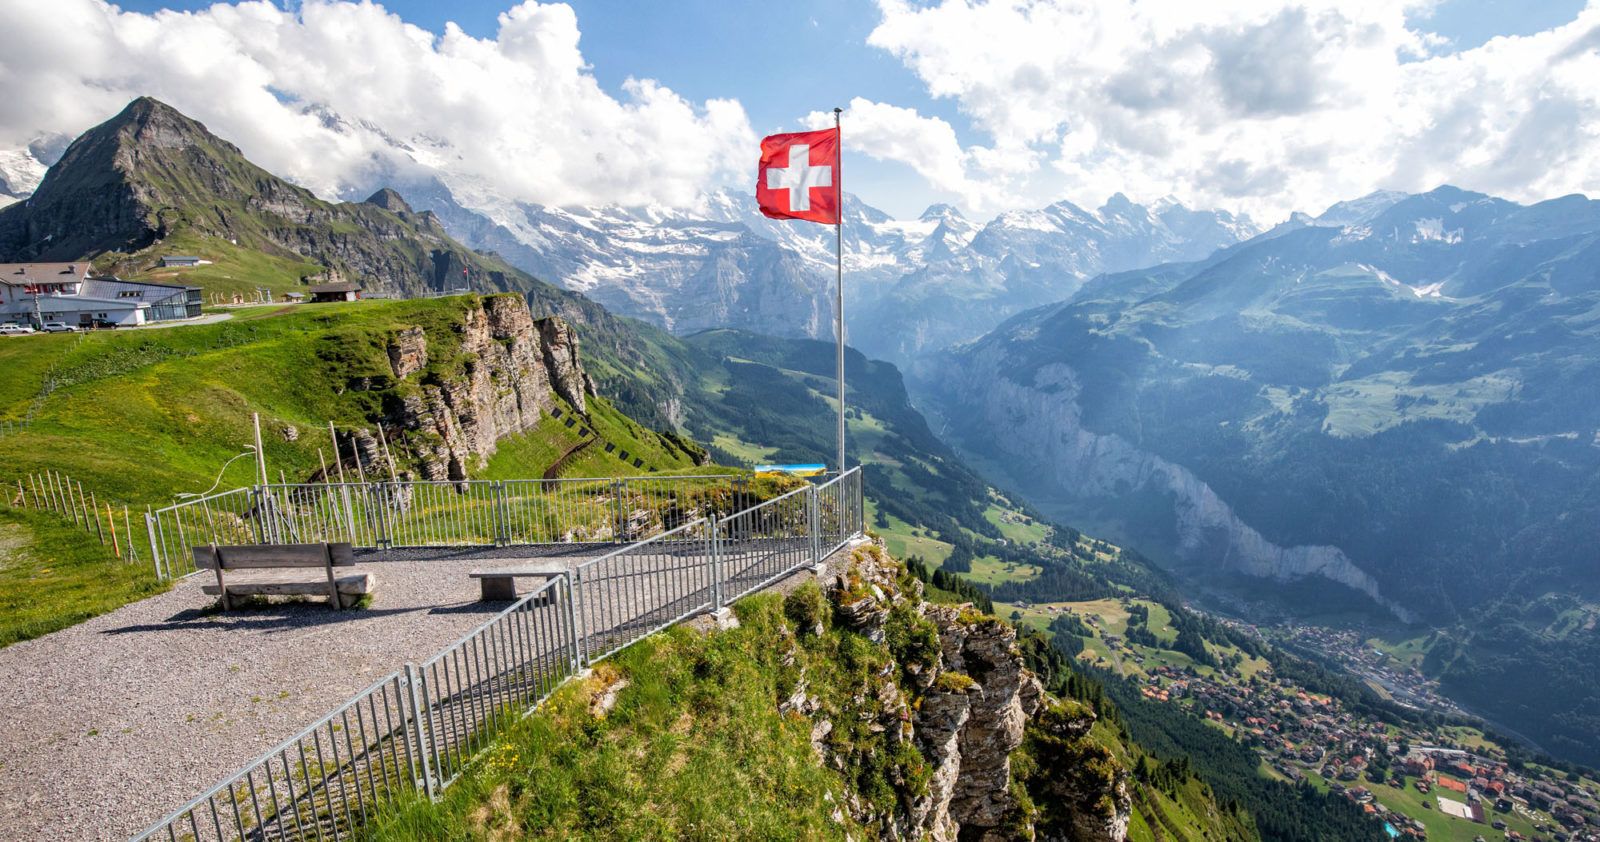 Things to do in Jungfrau Switzerland